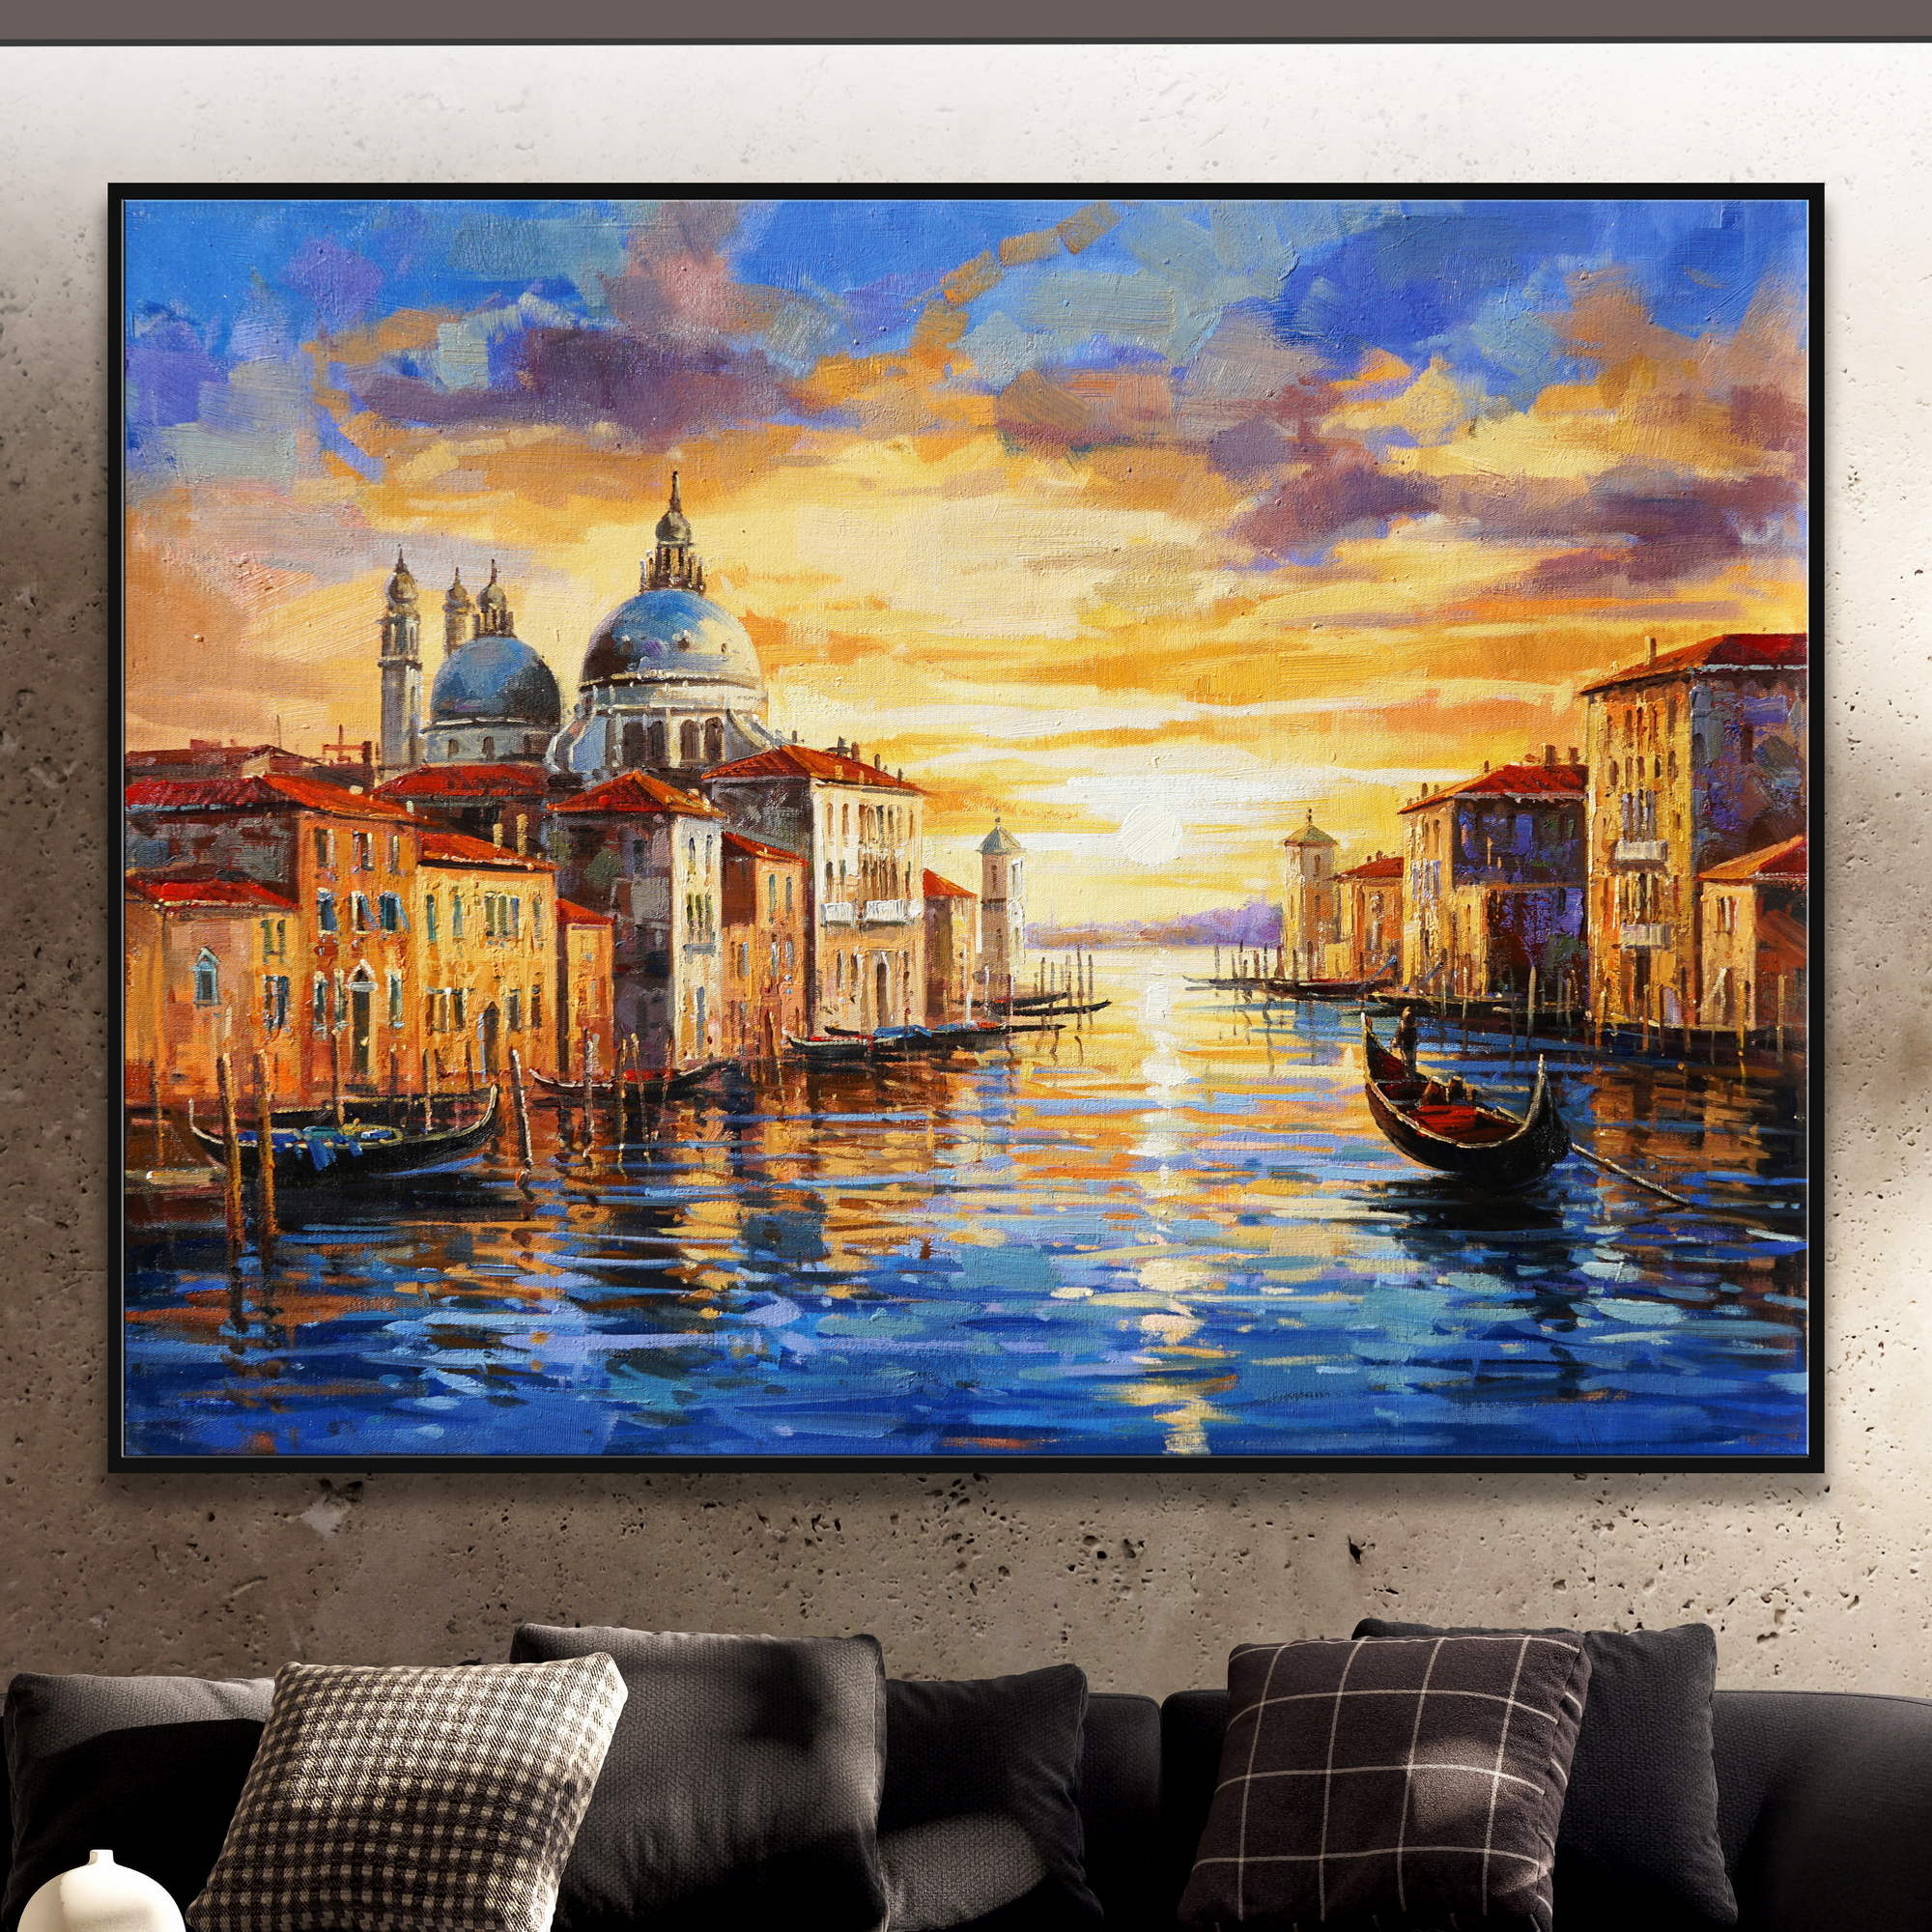 Dipinto di un tramonto a Venezia con edifici sul canale, basilica, gondole e un cielo nuvoloso